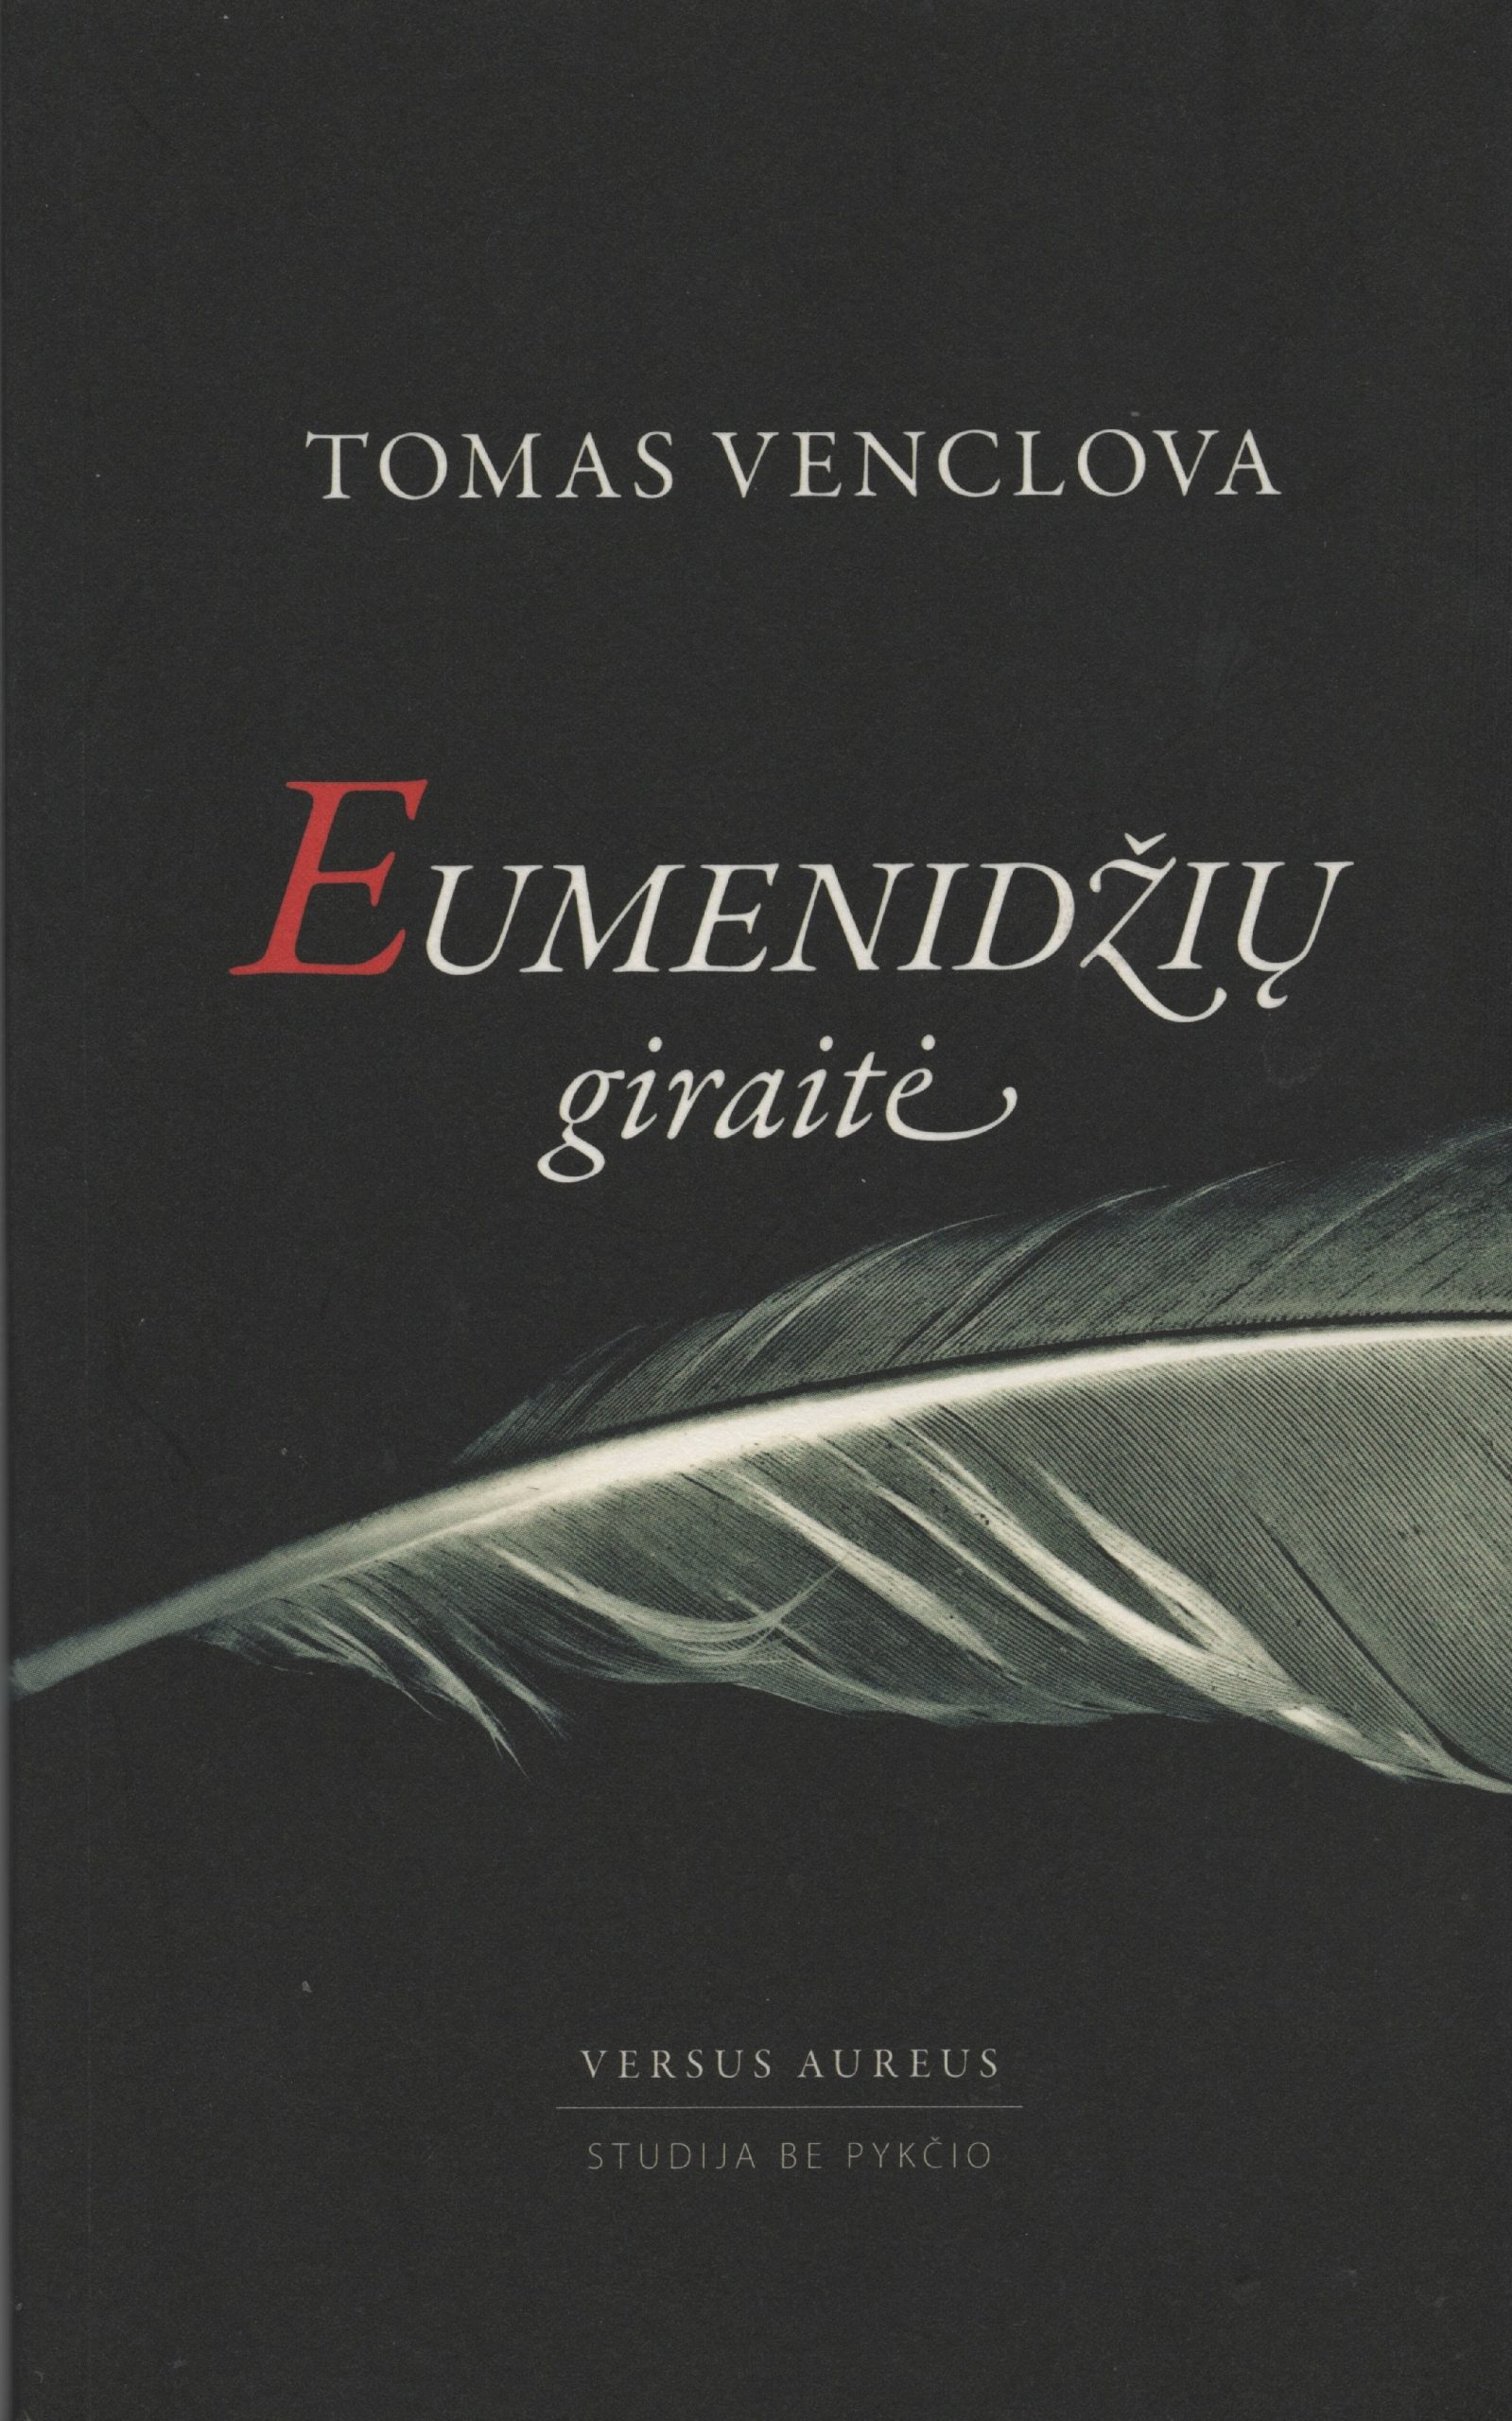 T. Venclova eilėraščių knyga „Eumenidžių giraitė“. Vilnius, 2016 m. Už ją 2017 m. garbingai įteikta Maironio premija. MLLM 121877